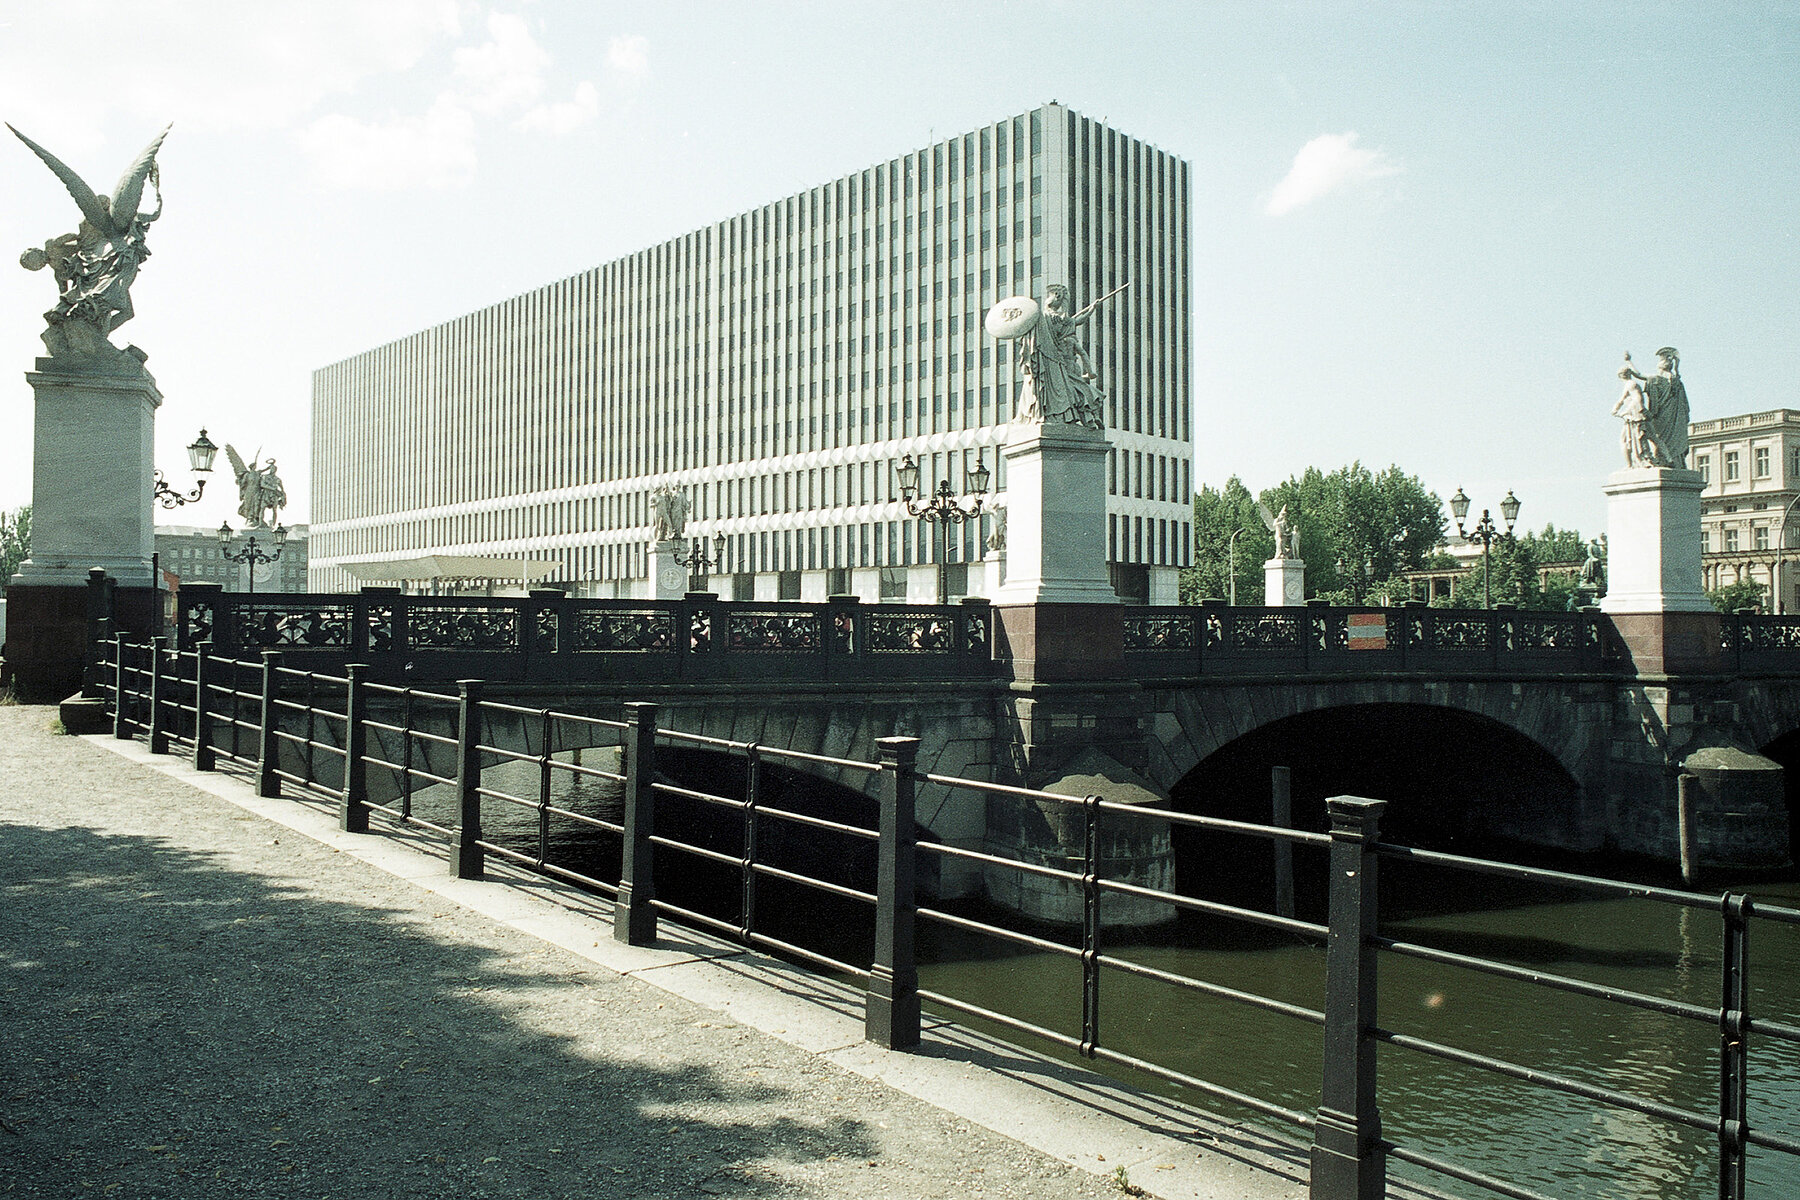 Die Schlossbrücke über der Spree mit Skulpturen von Kriegern und Siegesgöttinnen auf Sockeln. Hinten das weiße Hochhaus des DDR-Außenministeriums. 